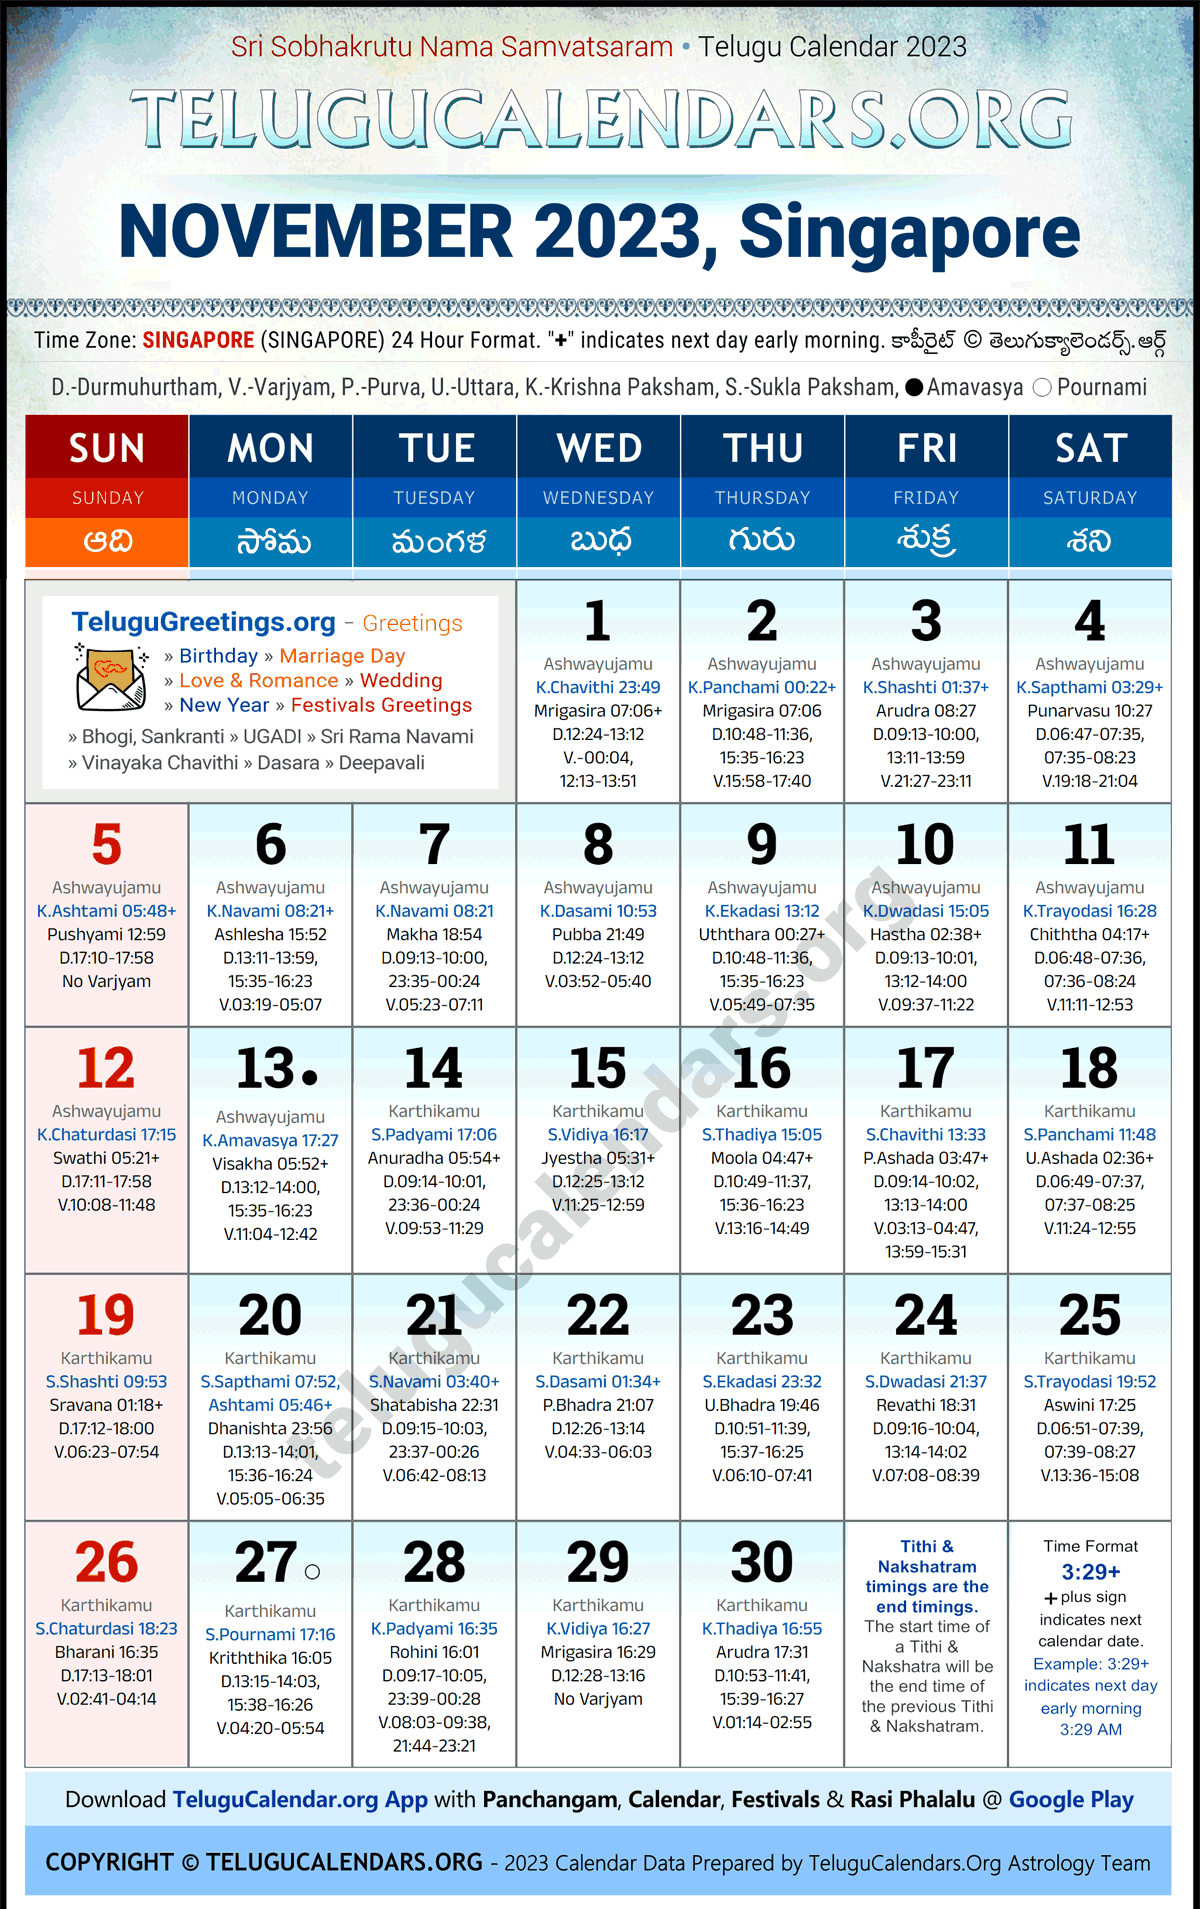 Telugu Calendar 2023 November Festivals for Singapore